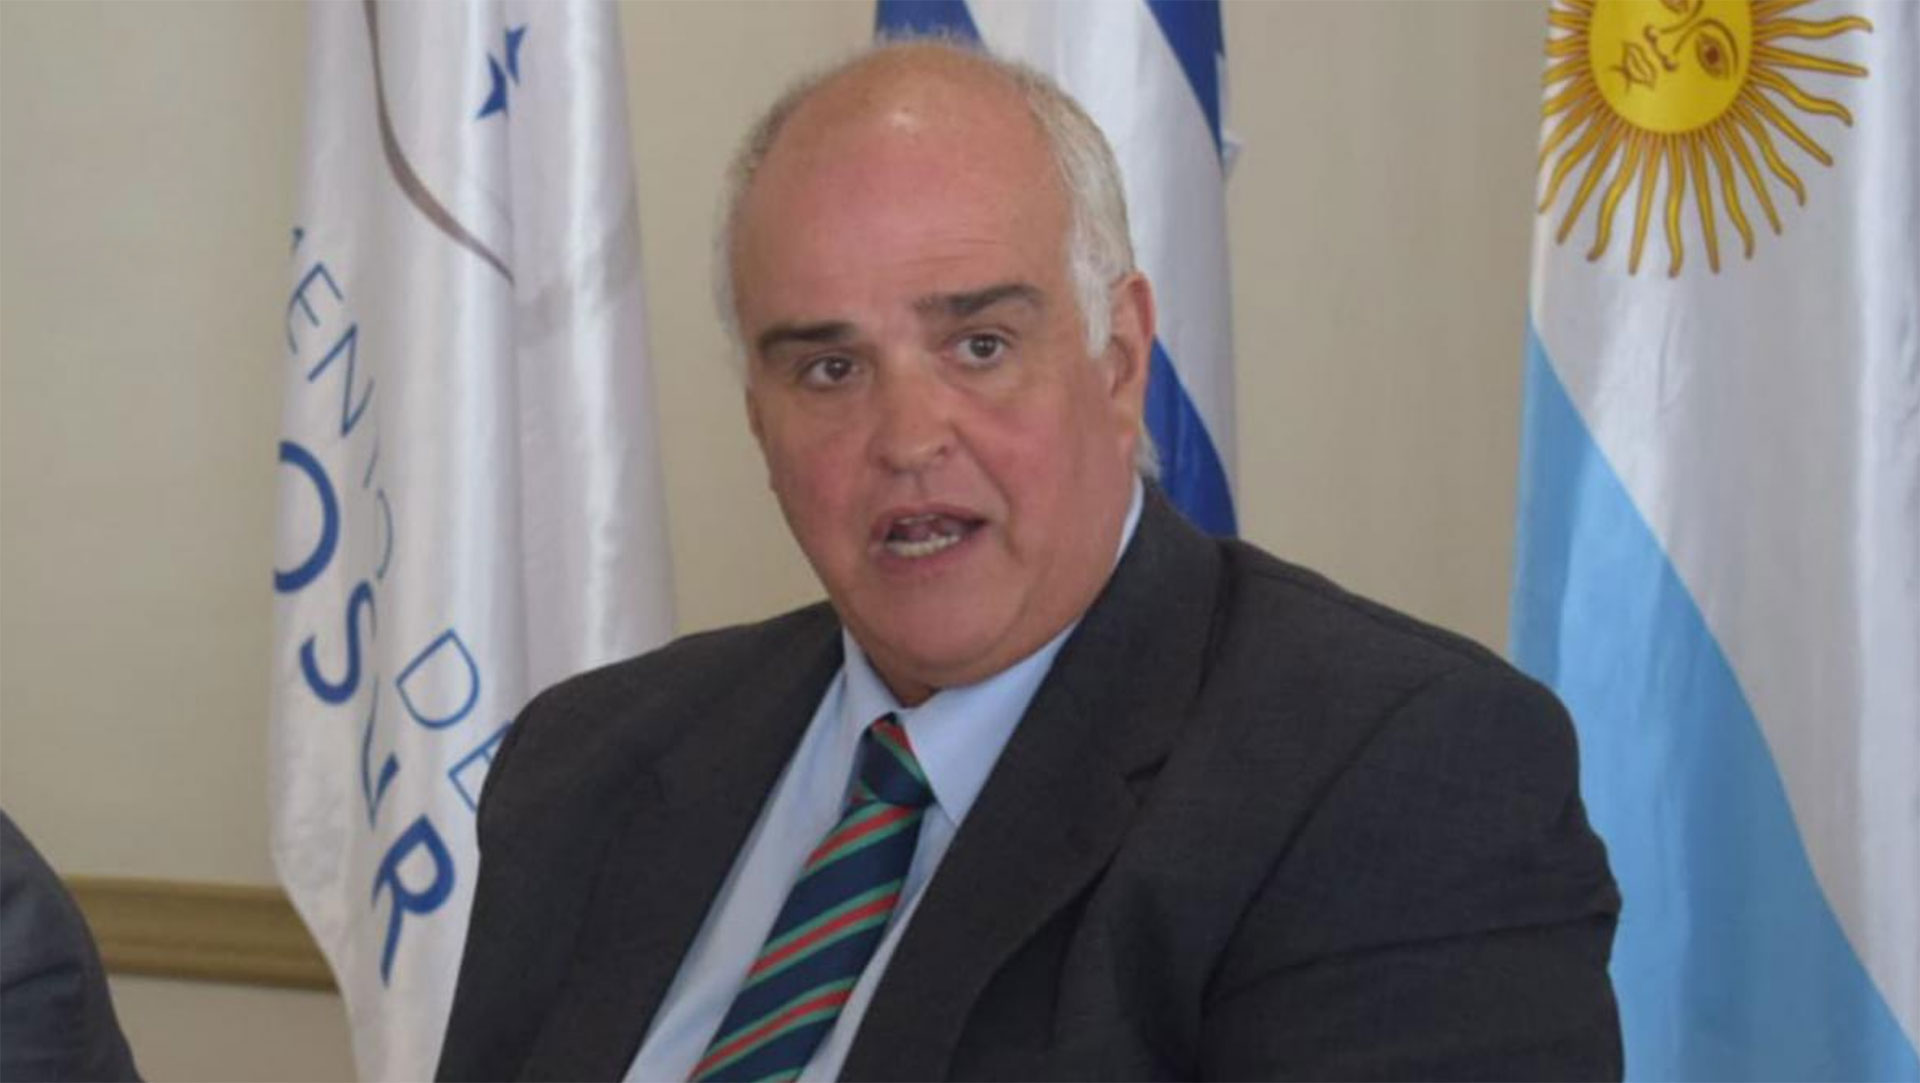 El senador uruguayo Gustavo Penadés, acusado de abuso sexual infantil, pidió el desafuero al Parlamento 